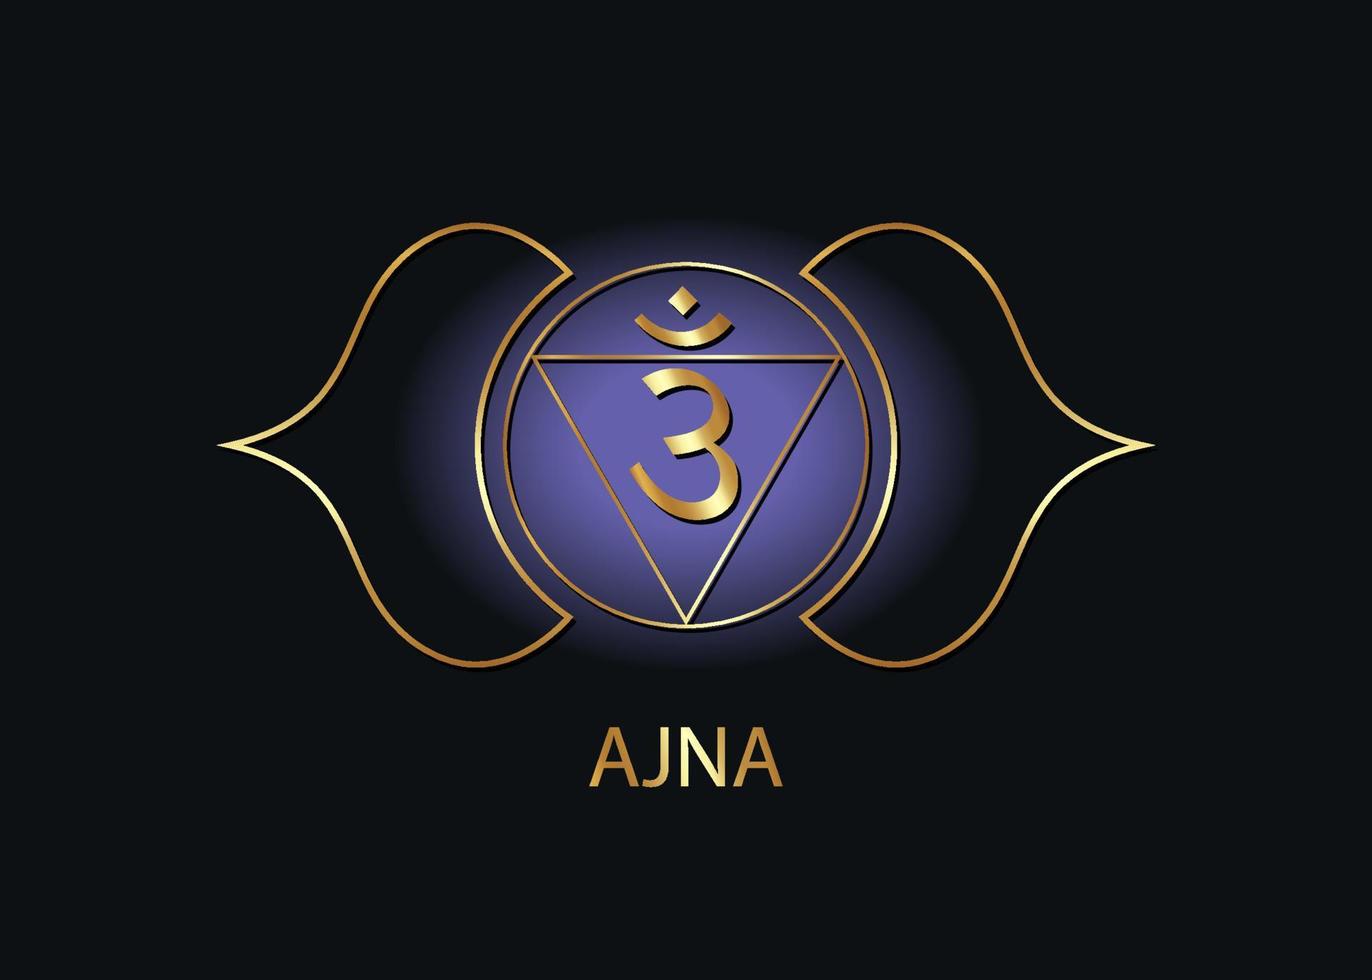 modelo de logotipo ajna chakra do terceiro olho. o sexto chakra frontal, meditação sagrada com sinal de ouro, vetor de ícone de mandala redondo de azul e roxo de ioga isolado no fundo preto